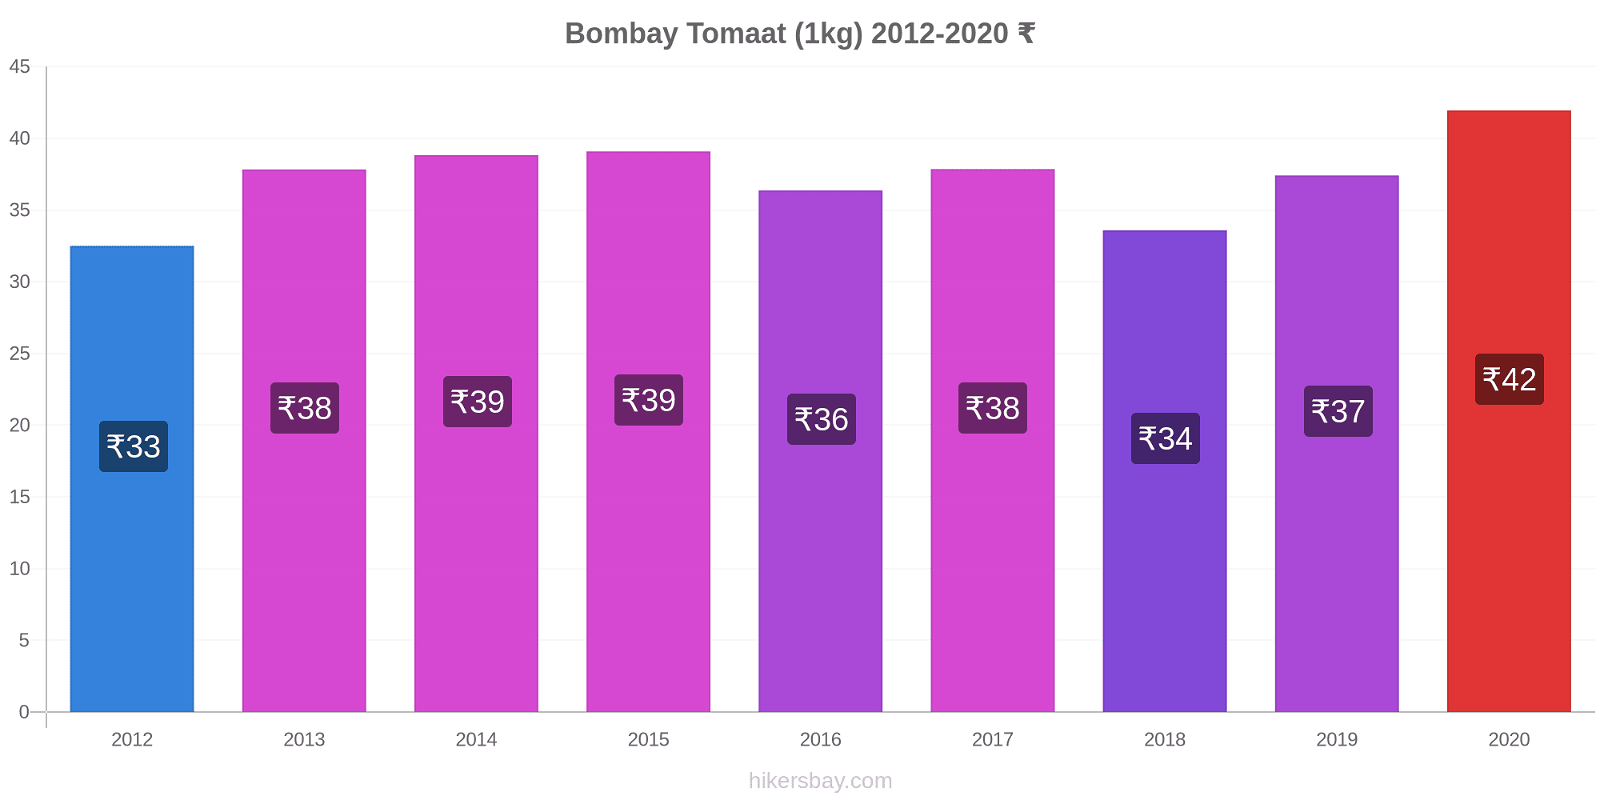 Bombay prijswijzigingen Tomaat (1kg) hikersbay.com